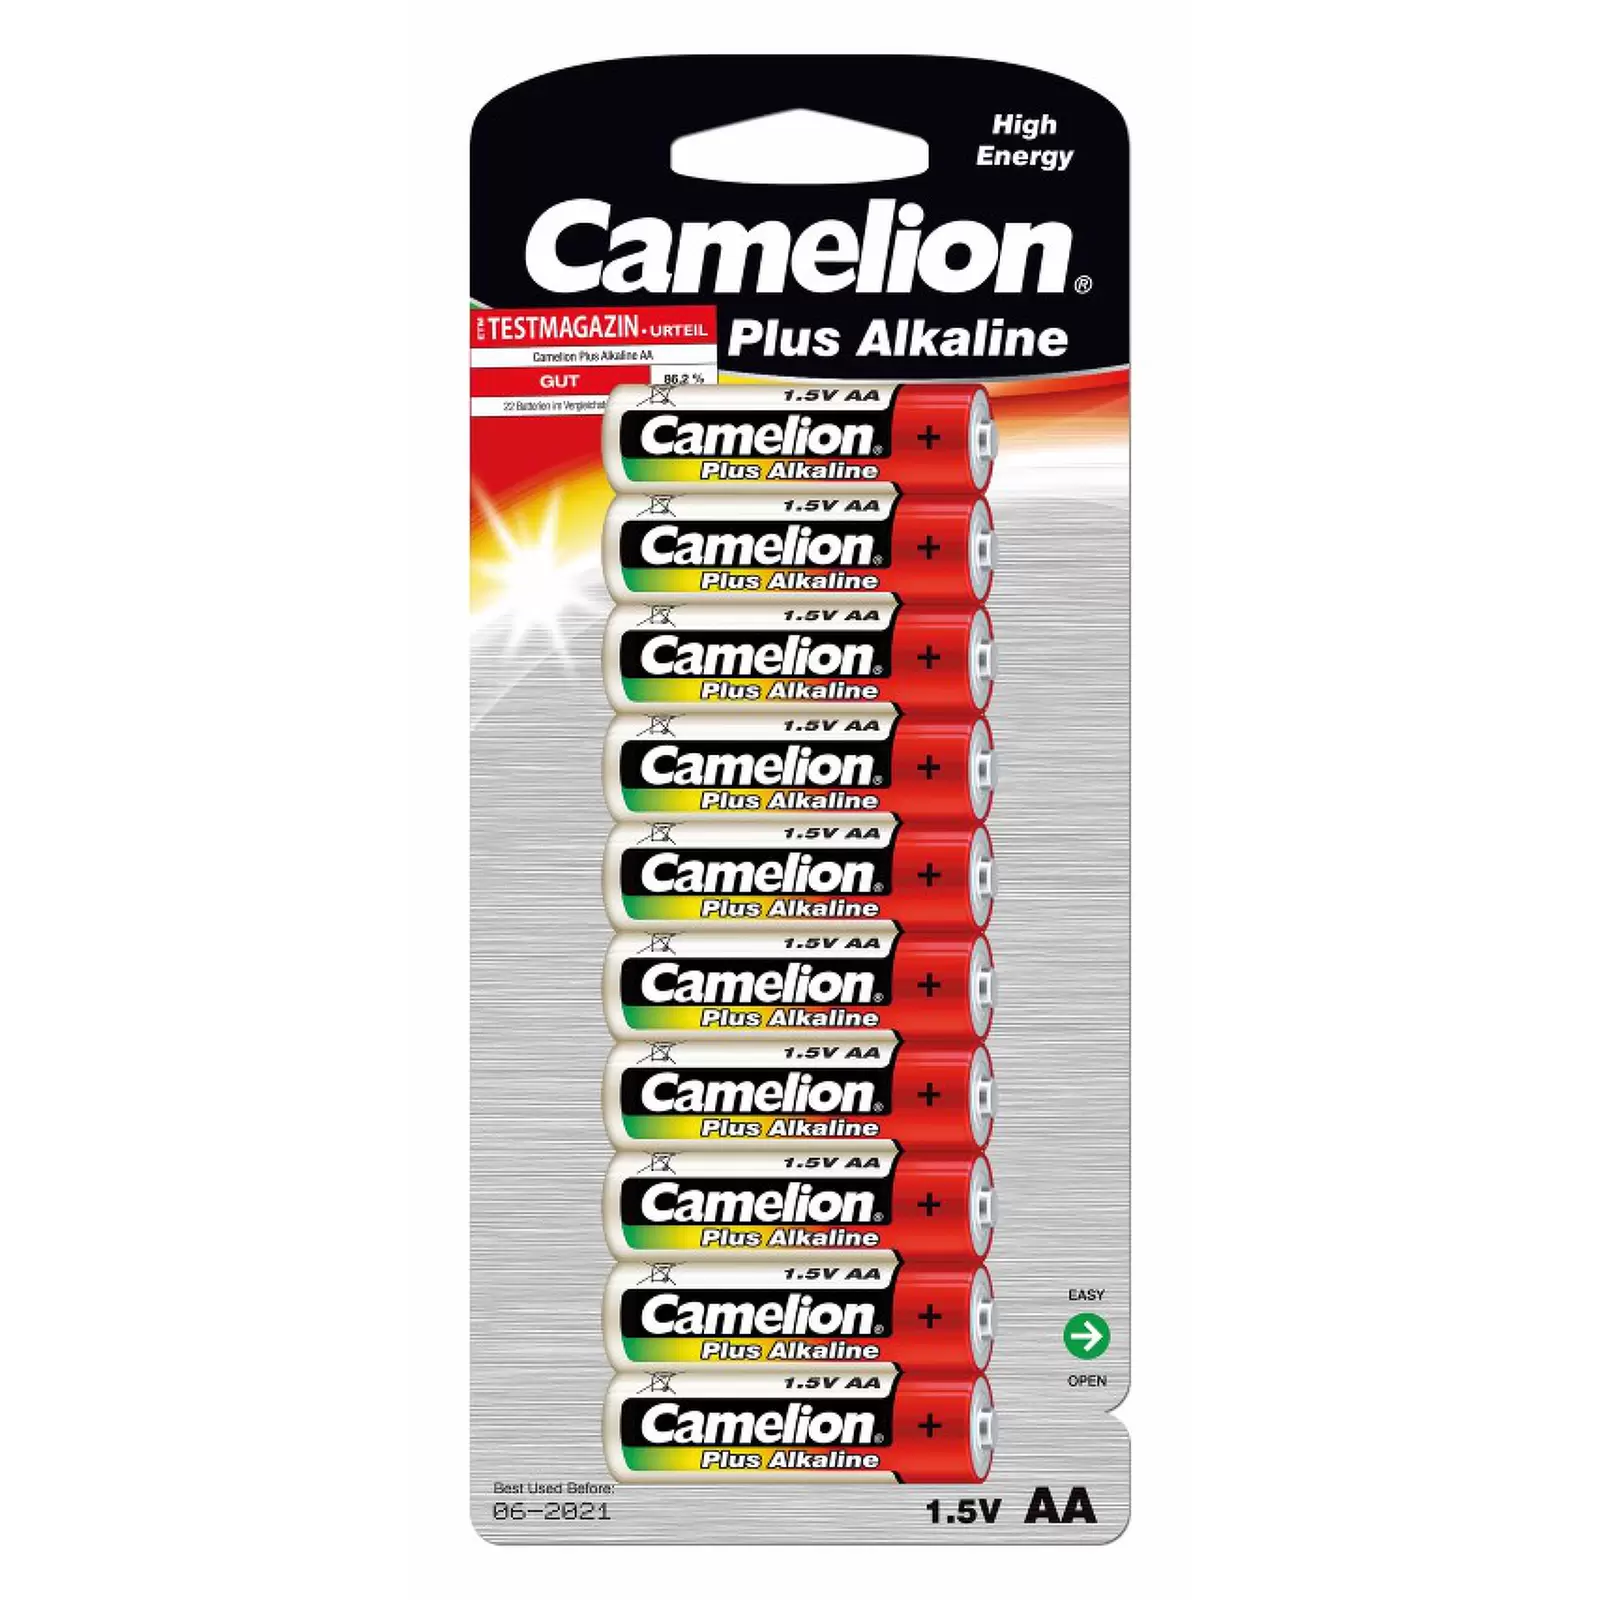 Batterie Camelion Mignon LR6 MN1500 AA AM3 Plus Alkaline 10er Blister